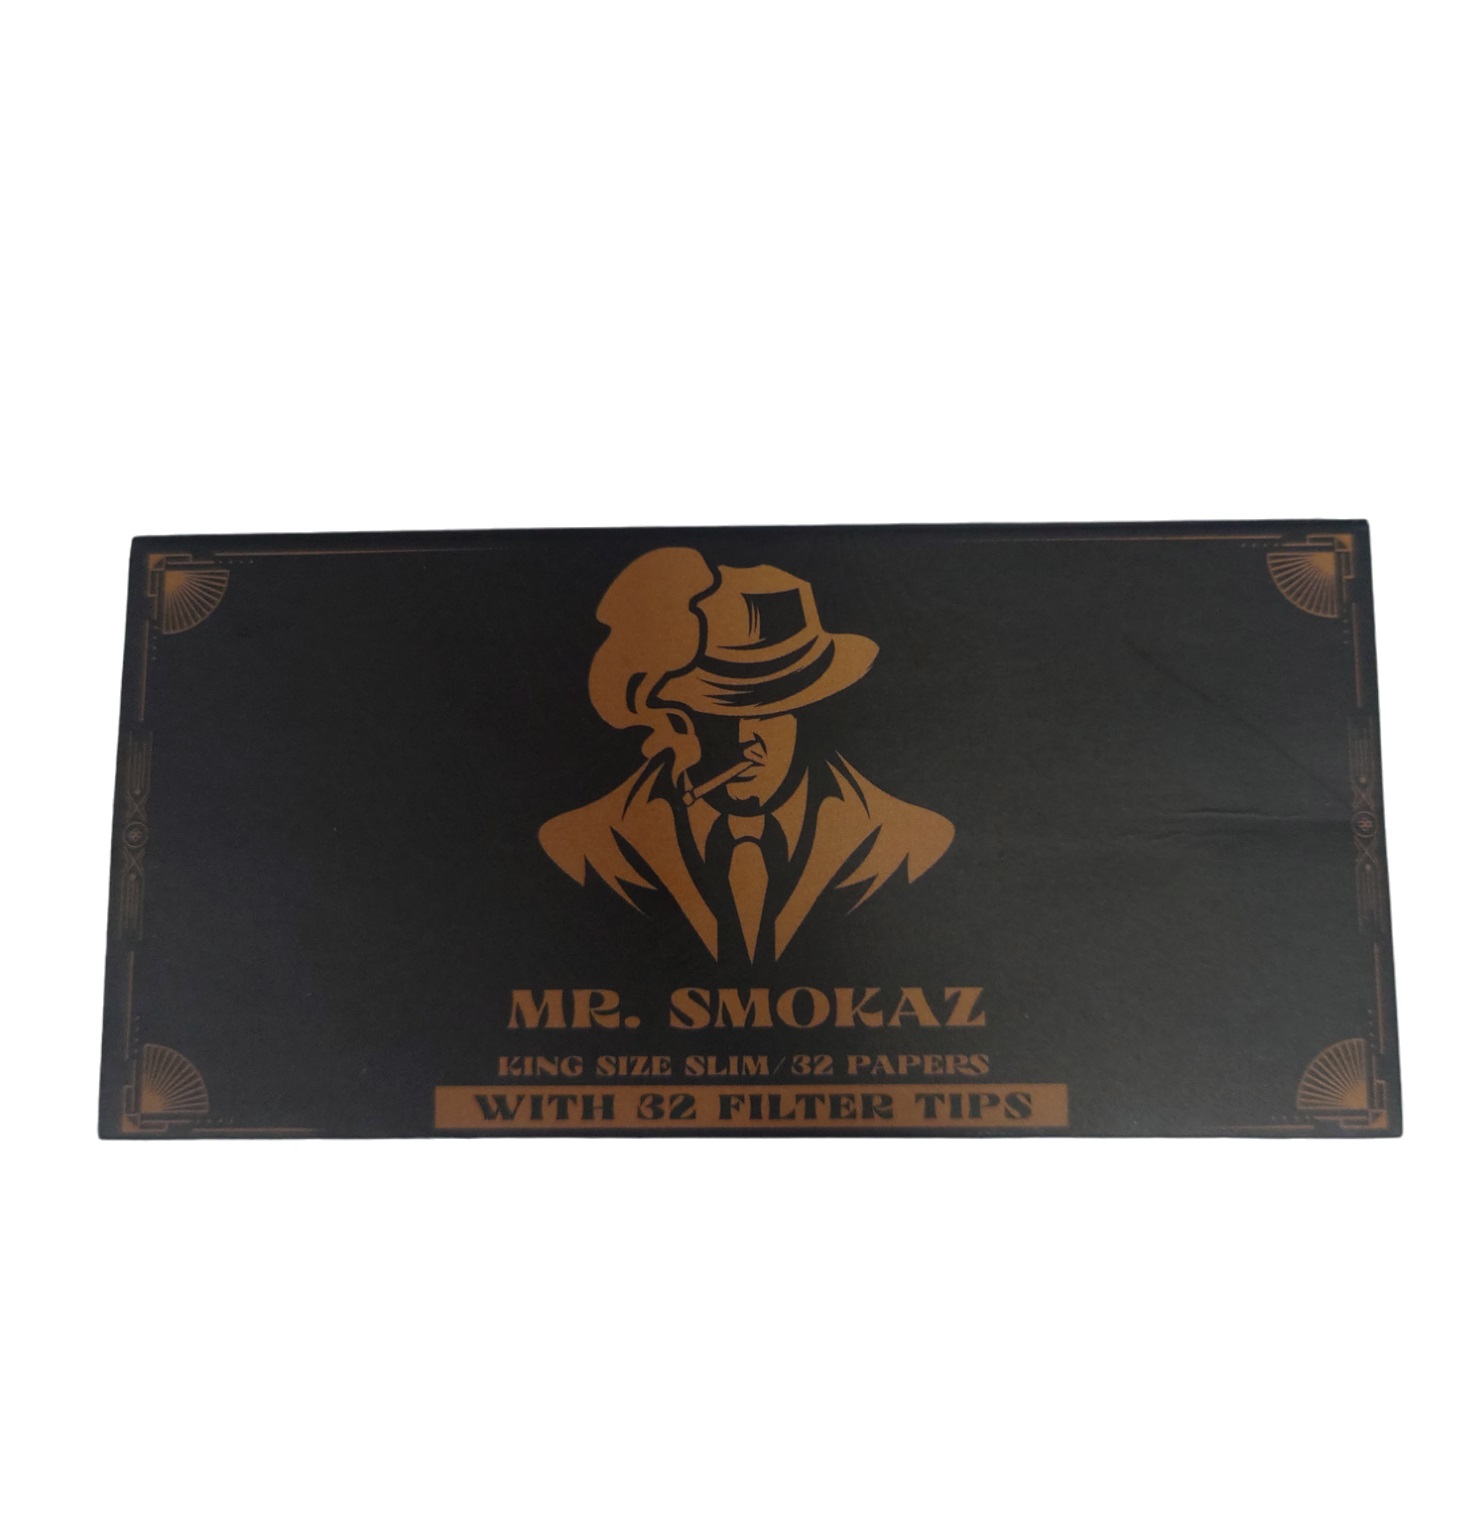 Mr. Smokaz - Longpapers & Tips Set King Size Slim